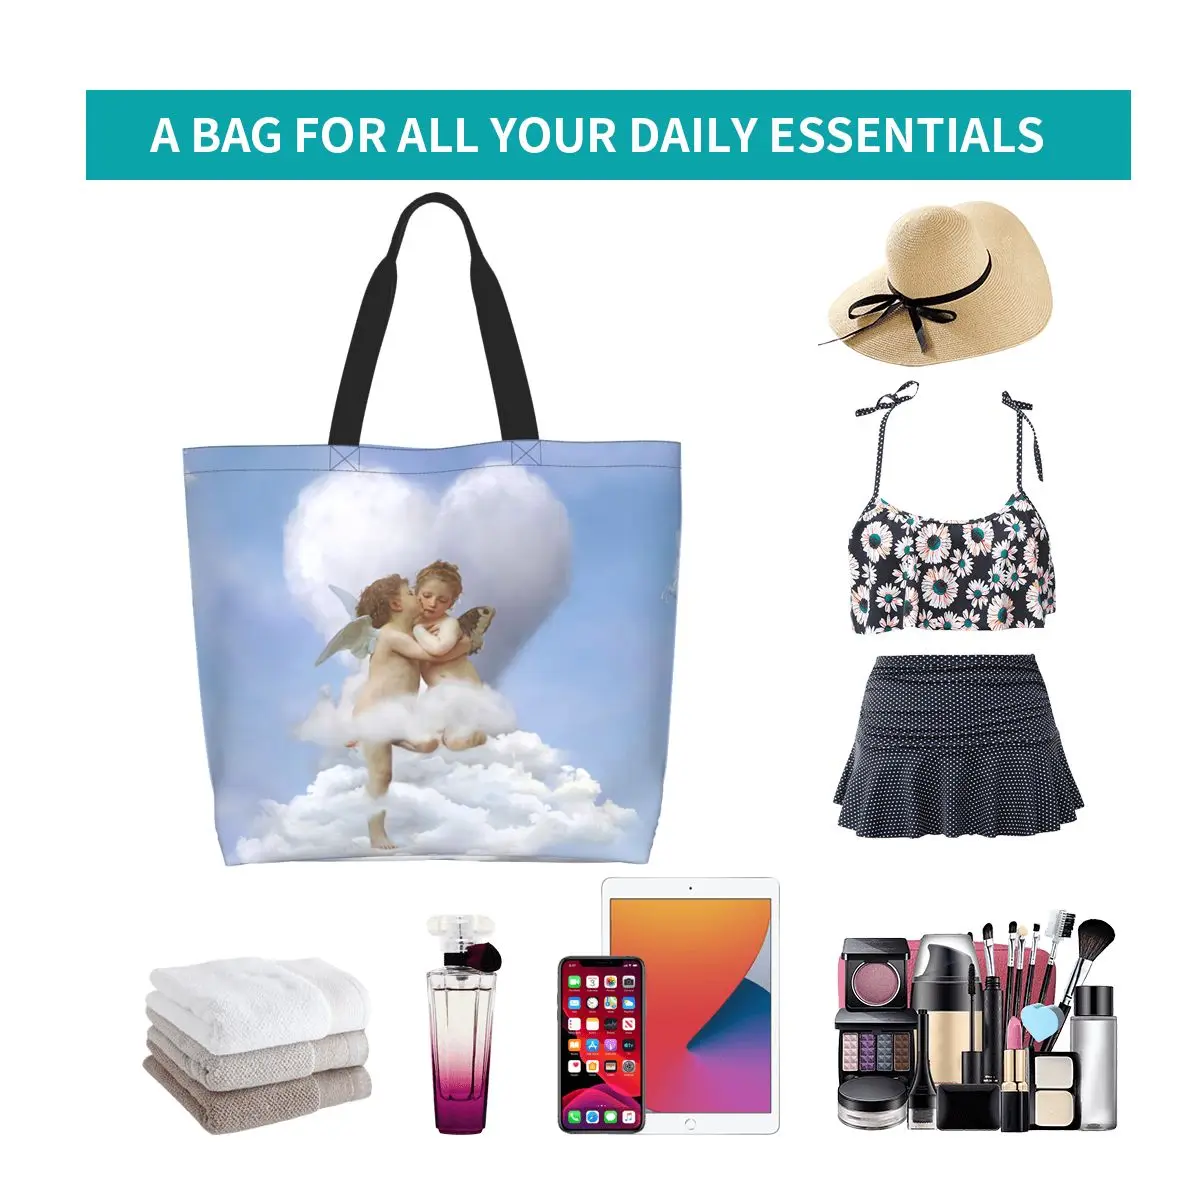 Модная сумка с принтом облаков, поцелуев ангелов, сумка для покупок, Моющаяся холщовая сумка для покупок, сумка в стиле Ренессанс с Херувимом . ' - ' . 5